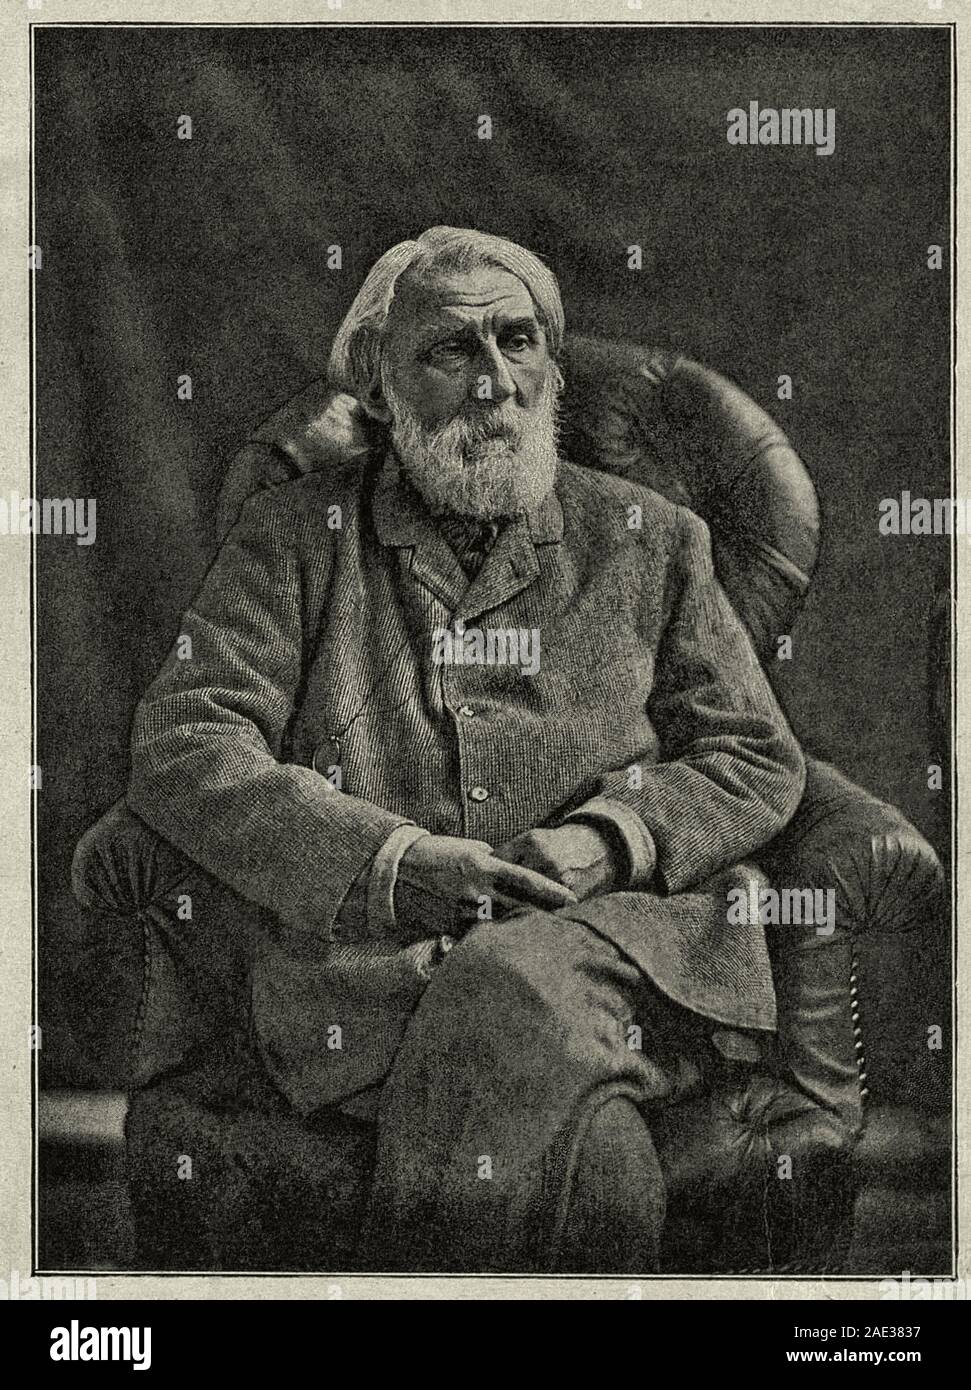 Photo d'Ivan Sergueïevitch Tourgueniev six mois avant sa mort. Ivan Sergueïevitch Tourgueniev (1818 - 1883) était un romancier, nouvelliste, p Banque D'Images